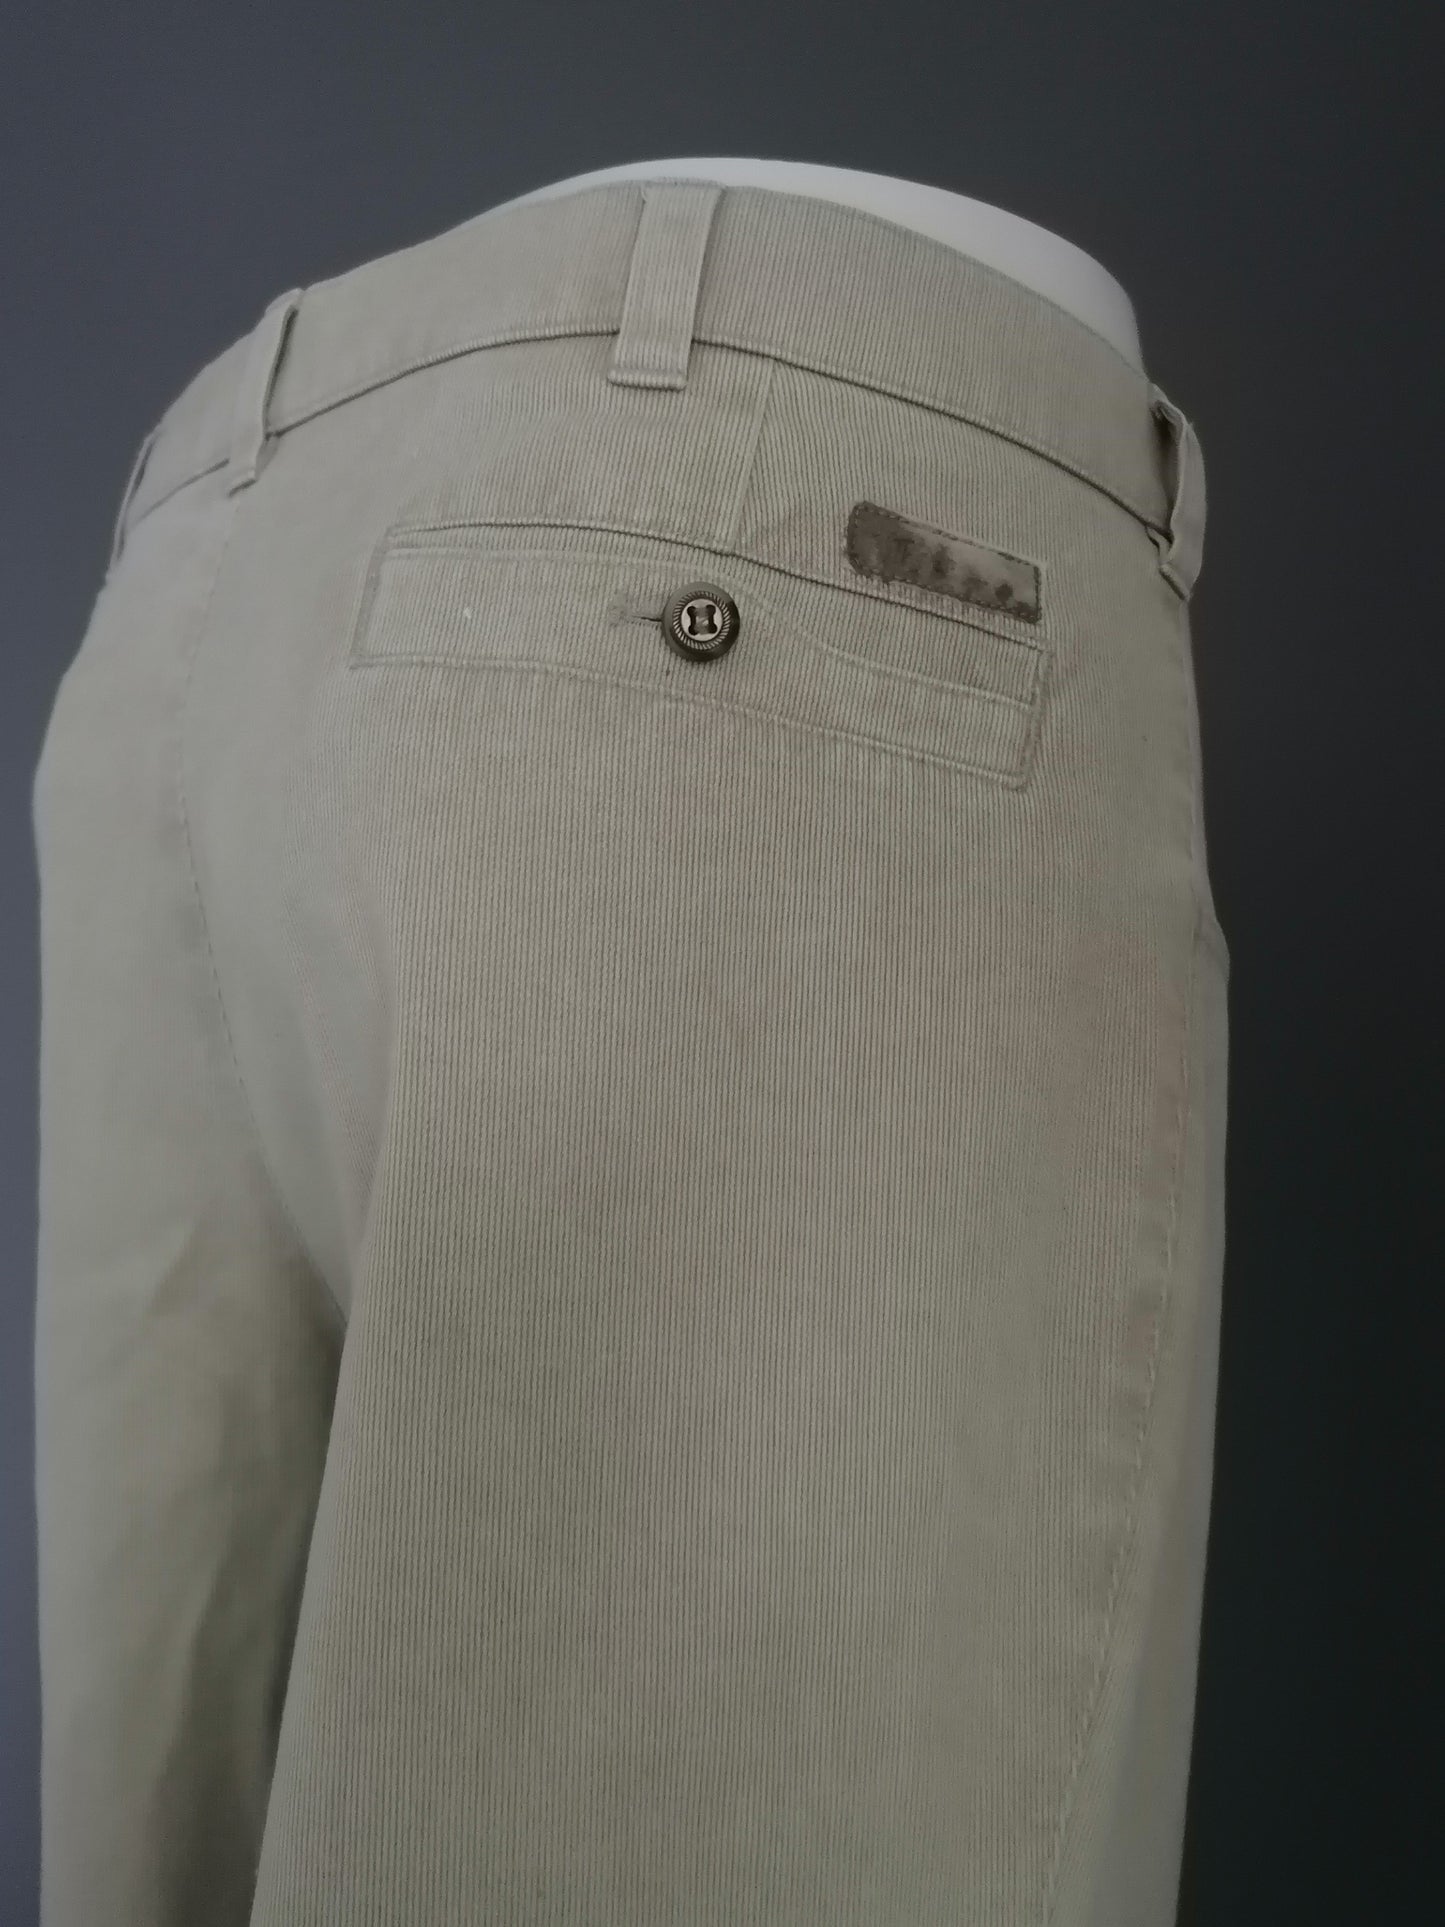 Pantaloni da allungamento di comfort. Motivo a strisce beige. Taglia 54 / L.